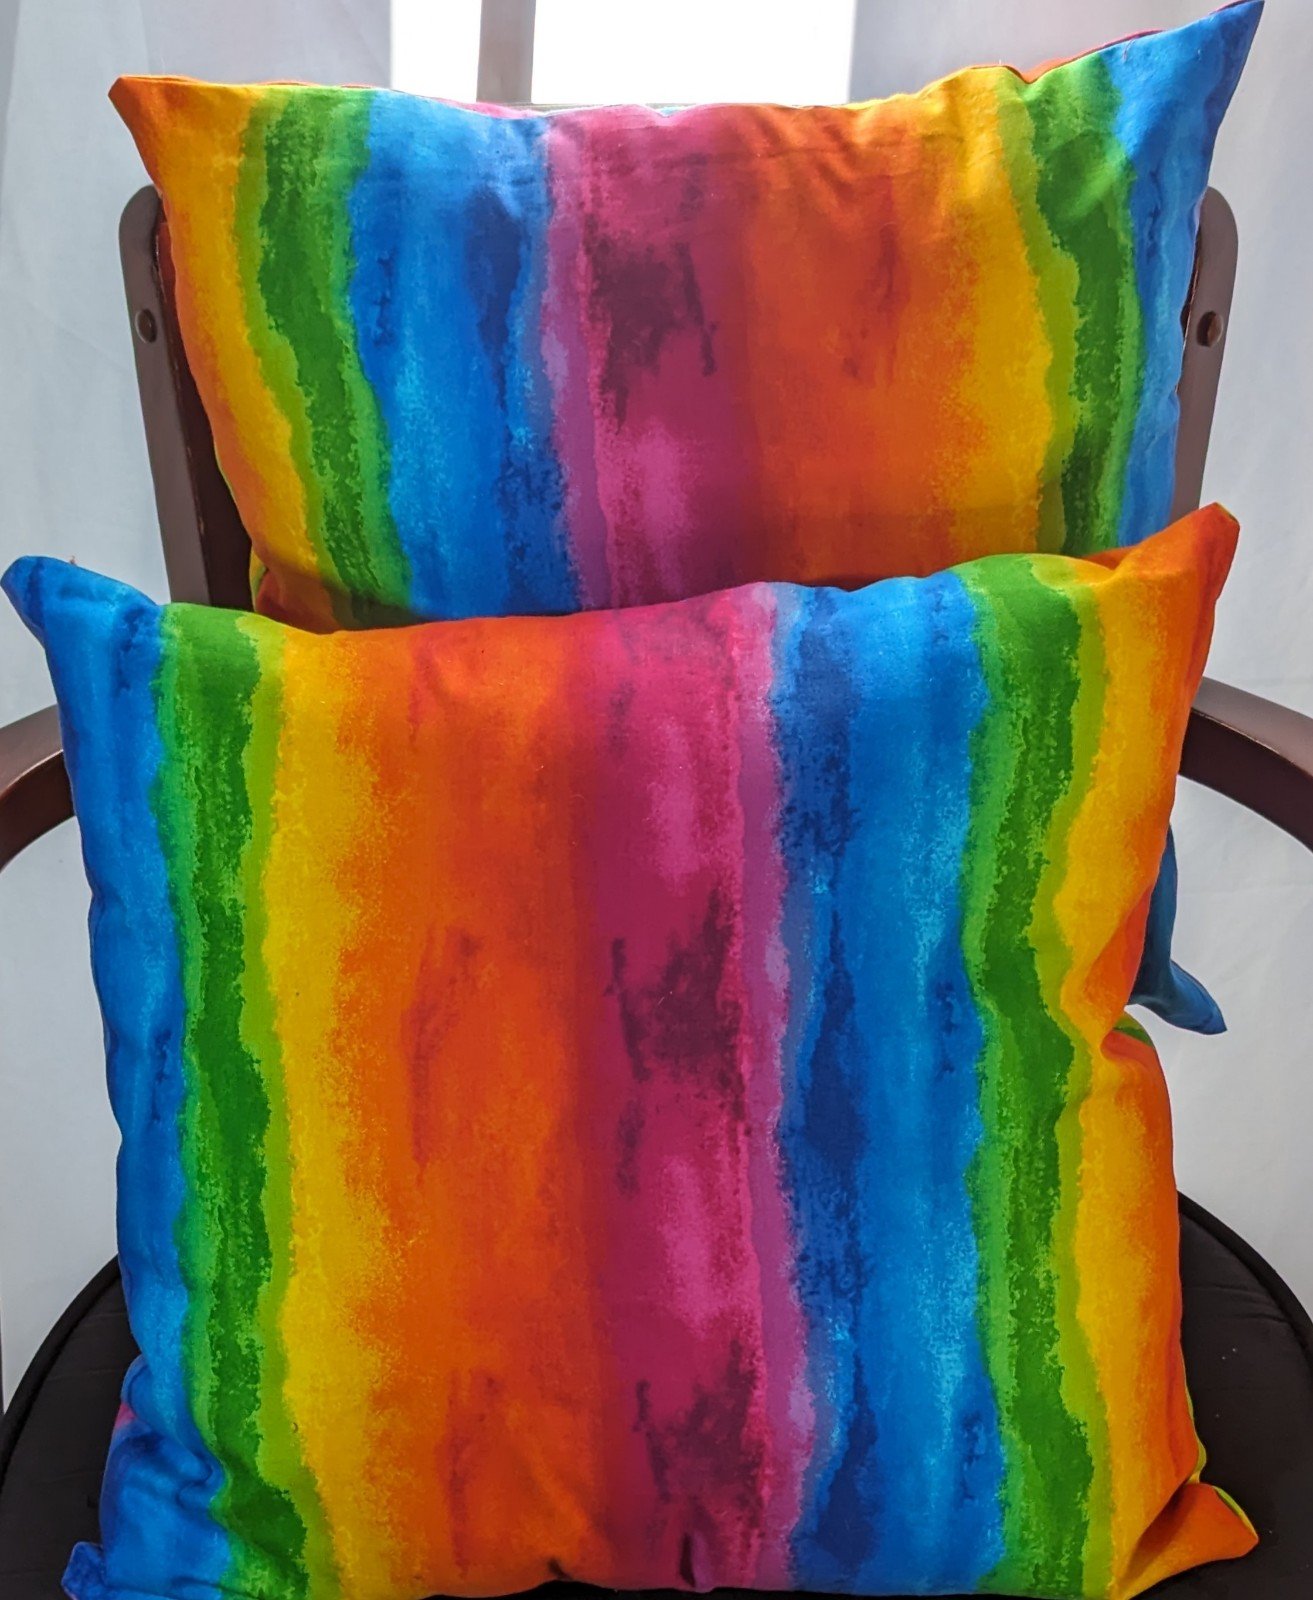 Rainbow pillows IC5Mlplko